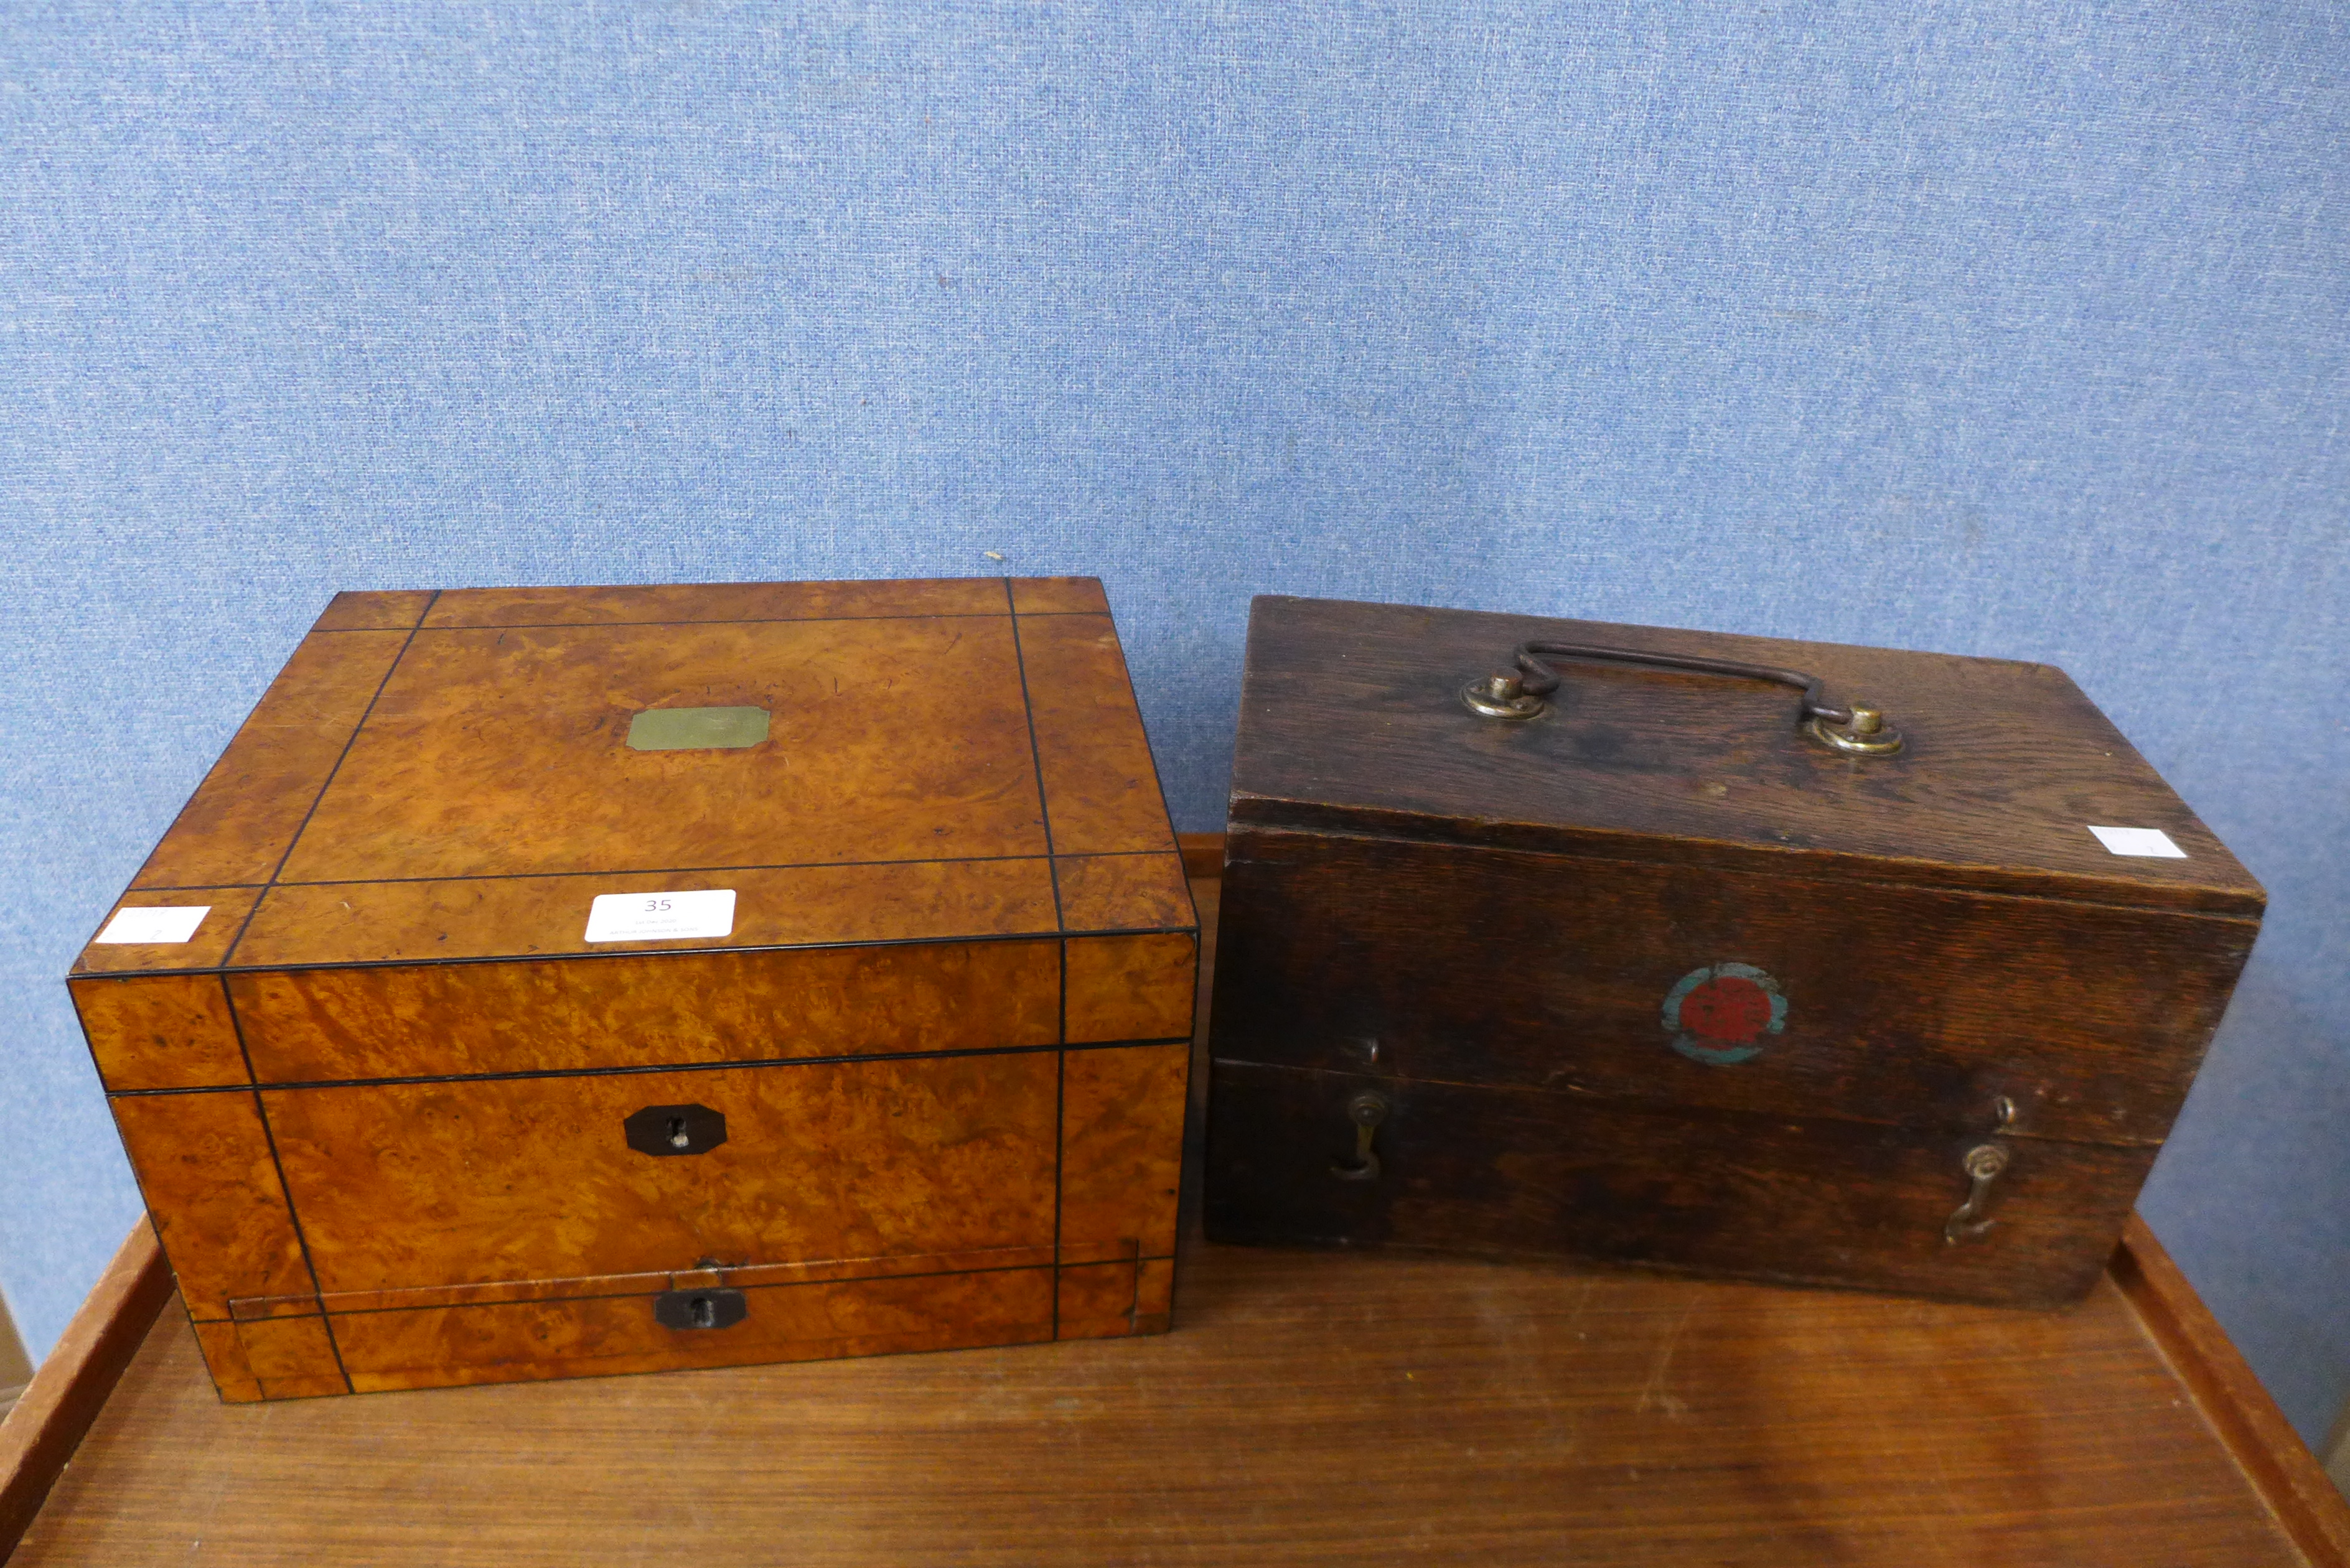 A Victorian burr walnut jewellery box 16.5cms h x 29.5cms w and an oak radio box